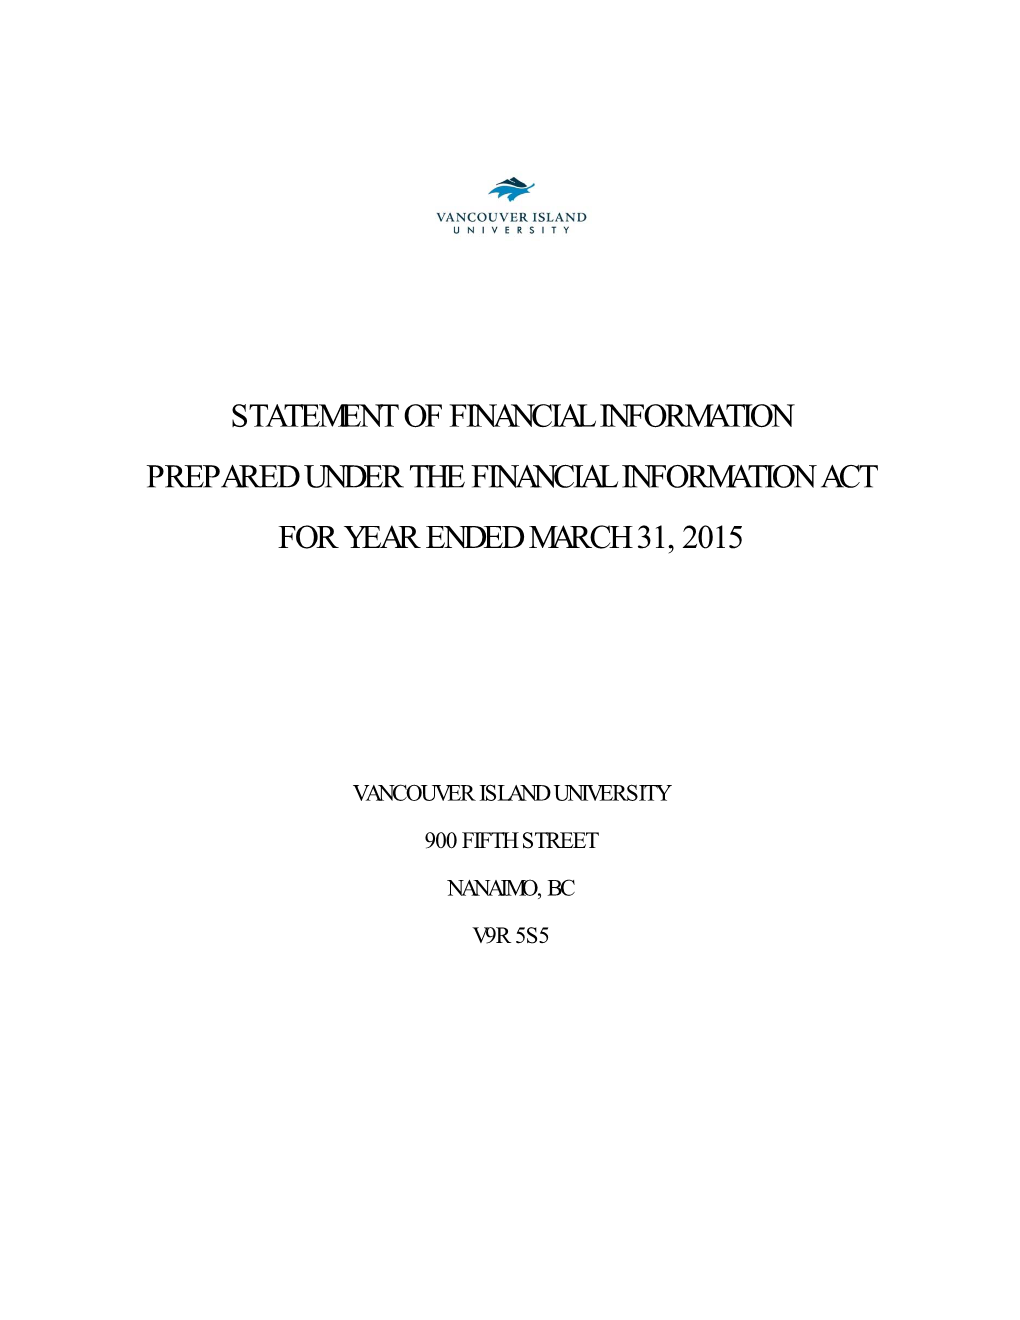 Statement of Financial Information Prepared Under the Financial Information Act for Year Ended March 31, 2015